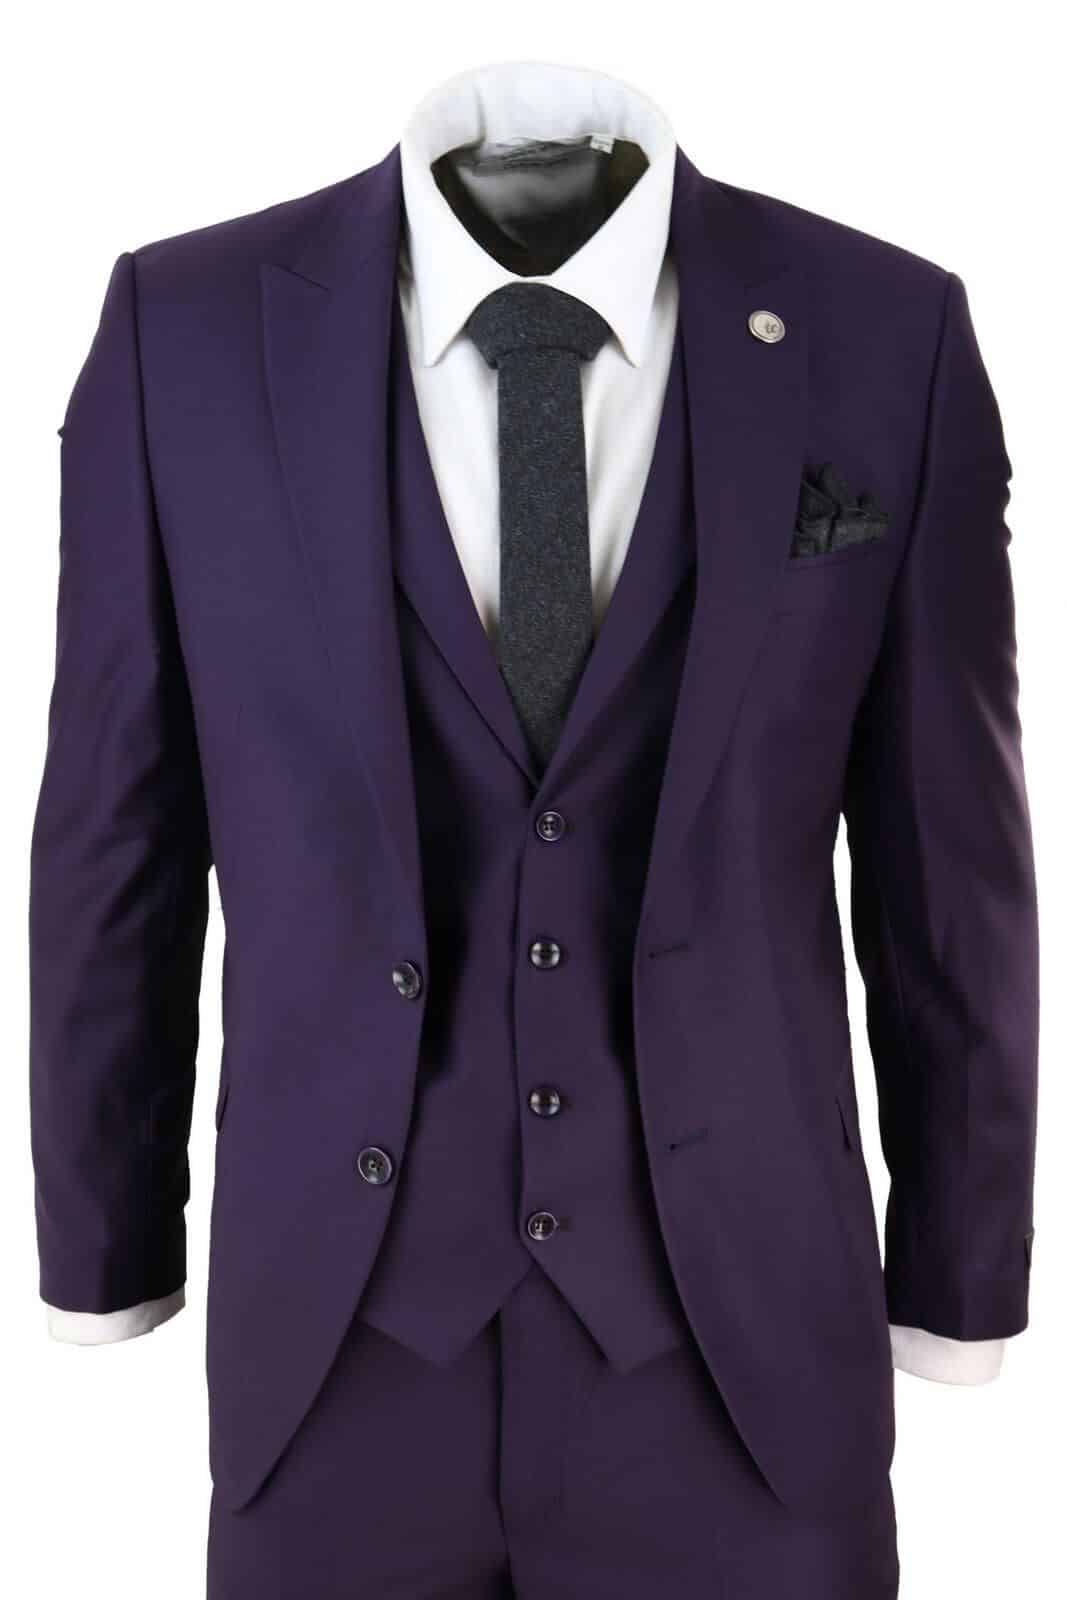 https://happygentleman.com/wp-content/uploads/2019/11/mens-deep-purple-3-piece-suit.jpg